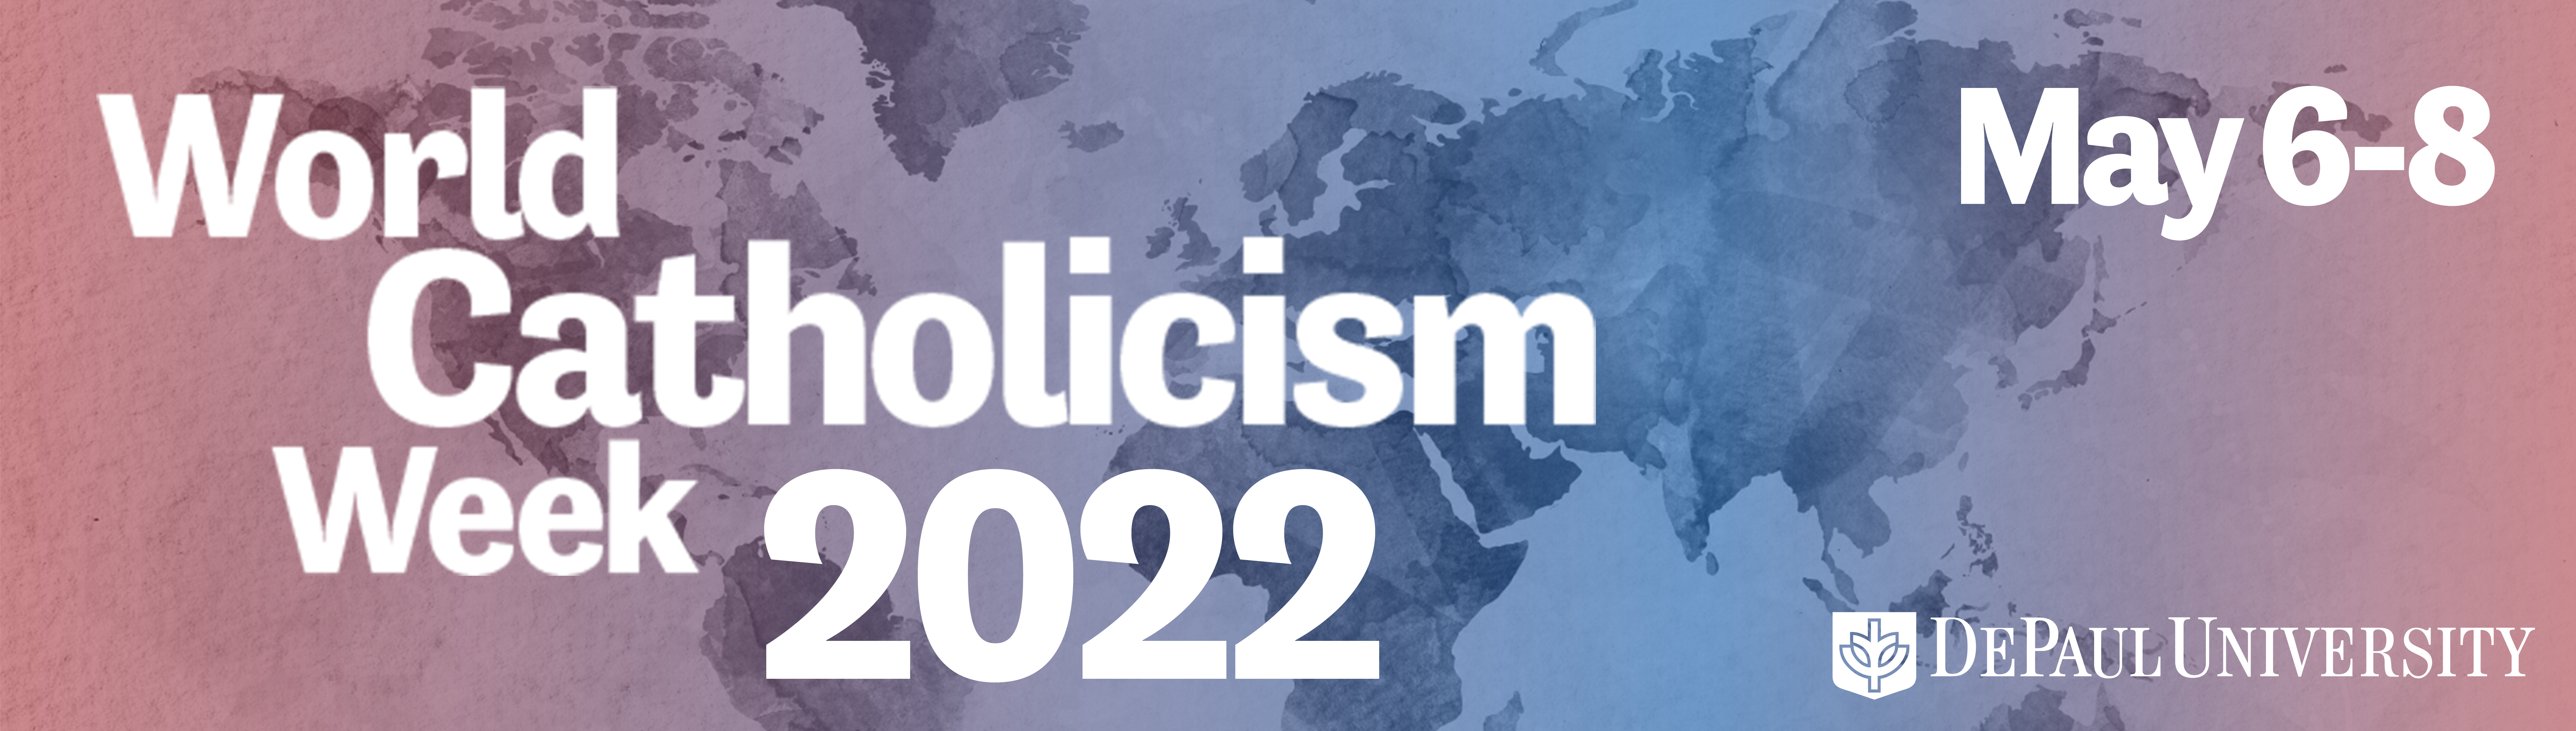 Logo for World Catholicism Week 2022